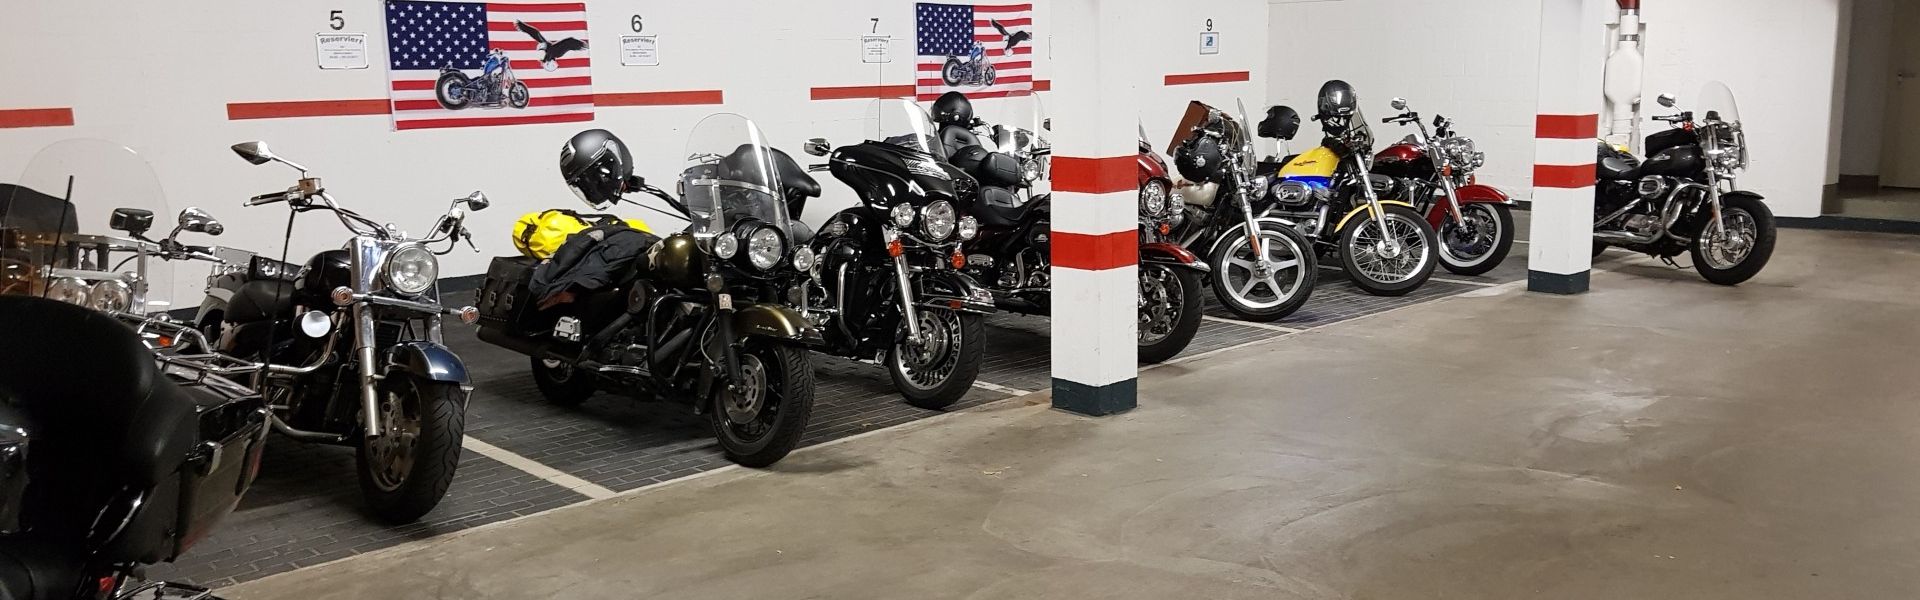 Impressionen Harleys in der Tiefgarage